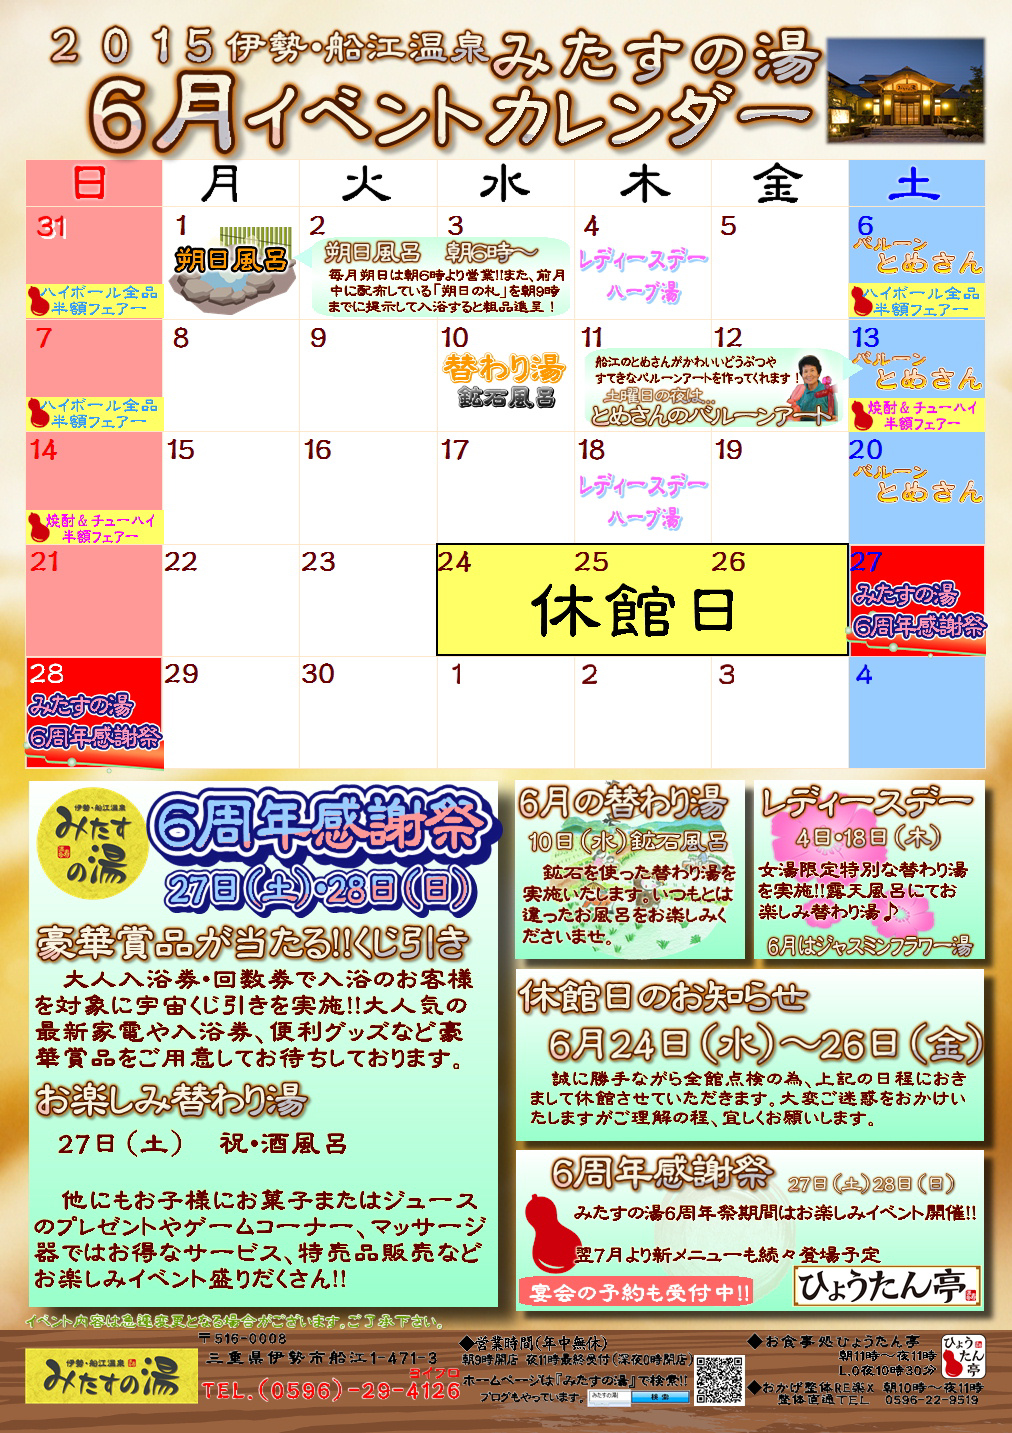 15年6月のイベントカレンダー 三重県伊勢市のスーパー銭湯 伊勢 船江温泉 みたすの湯